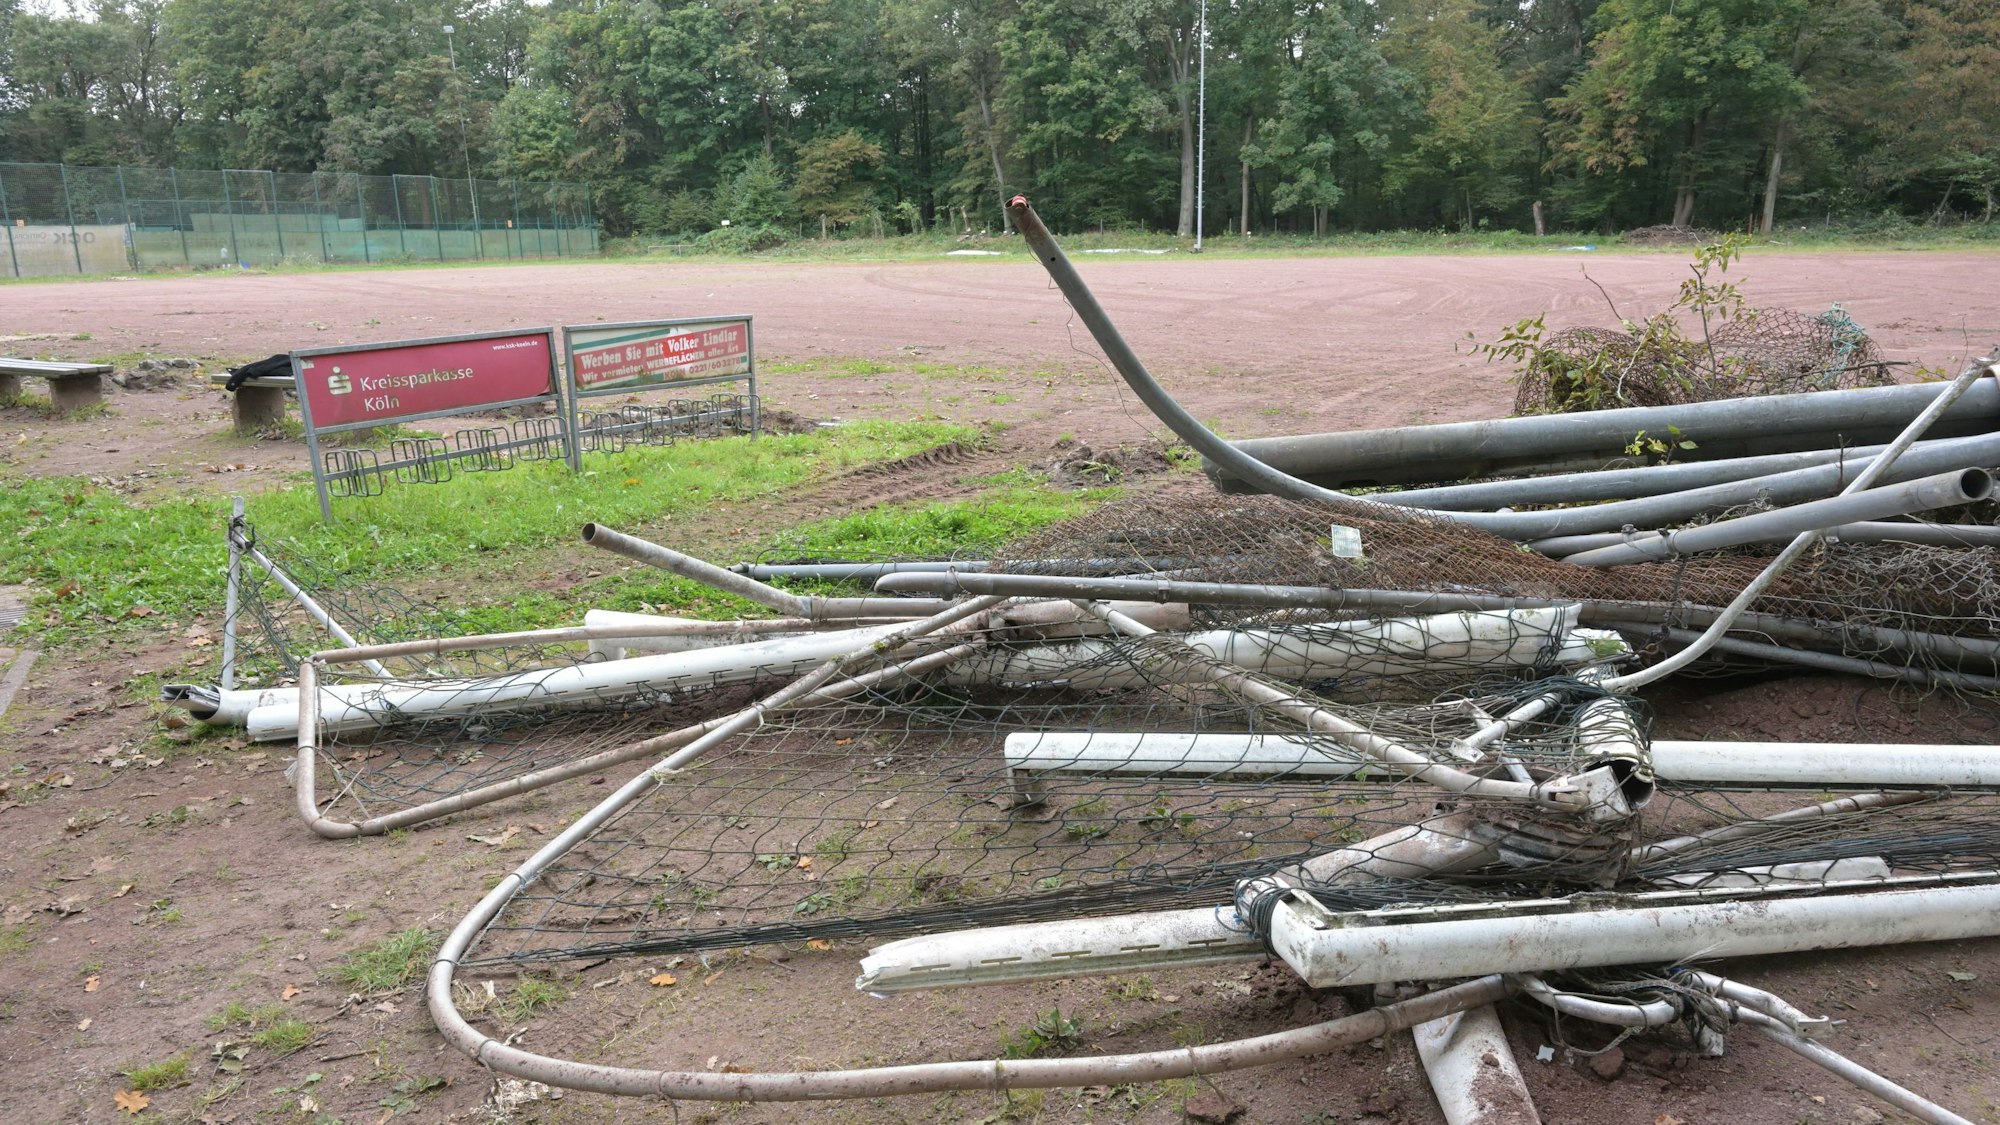 Teils aufgetürmt liegen die Stangen und Netze der Fußballtore auf dem Boden.